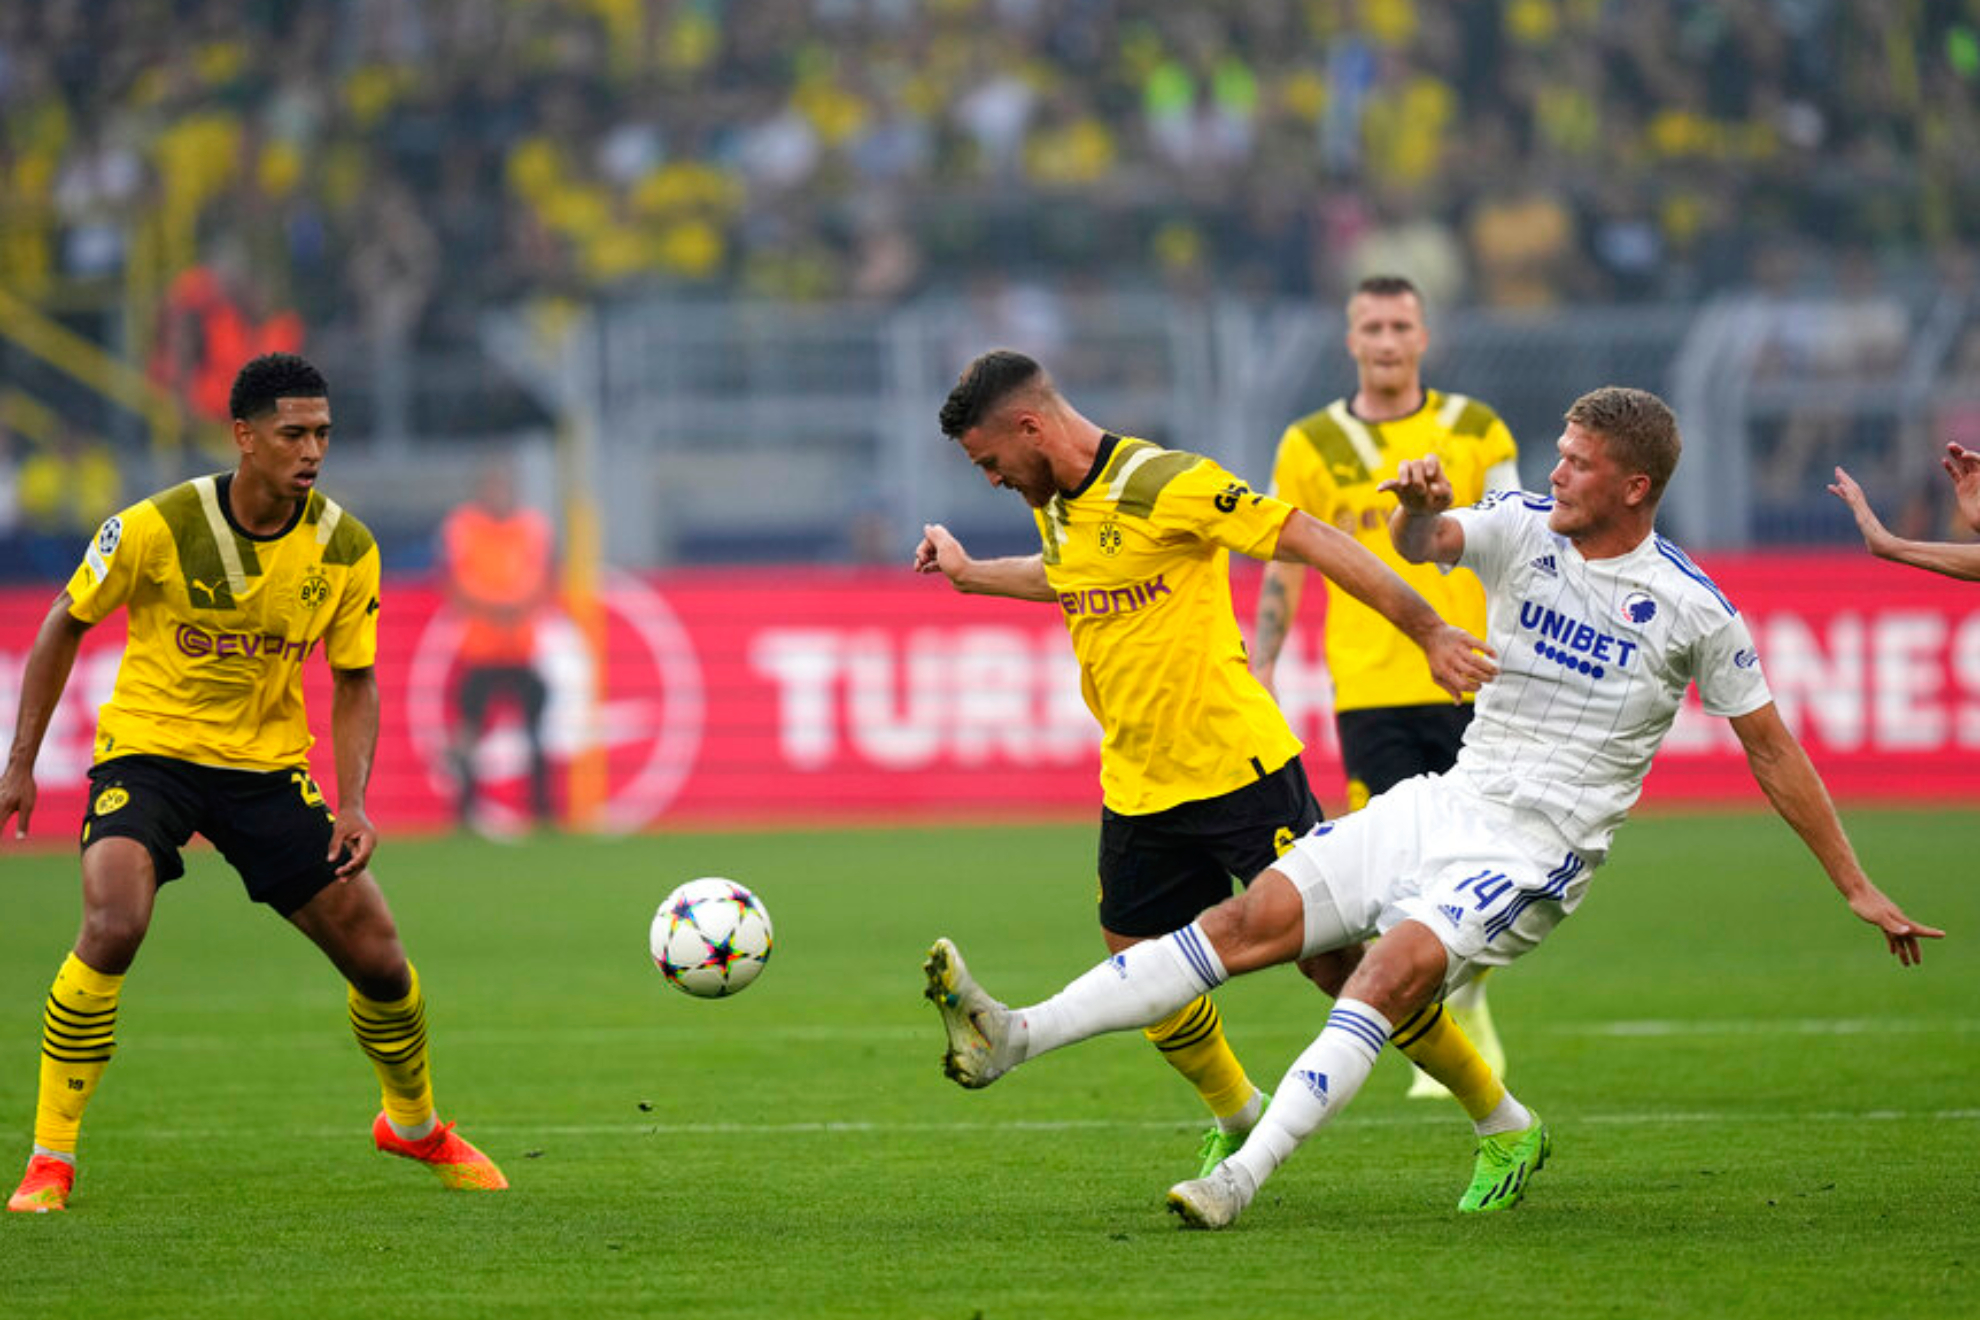 Copenhague - Borussia Dortmund: resumen, resultado y goles